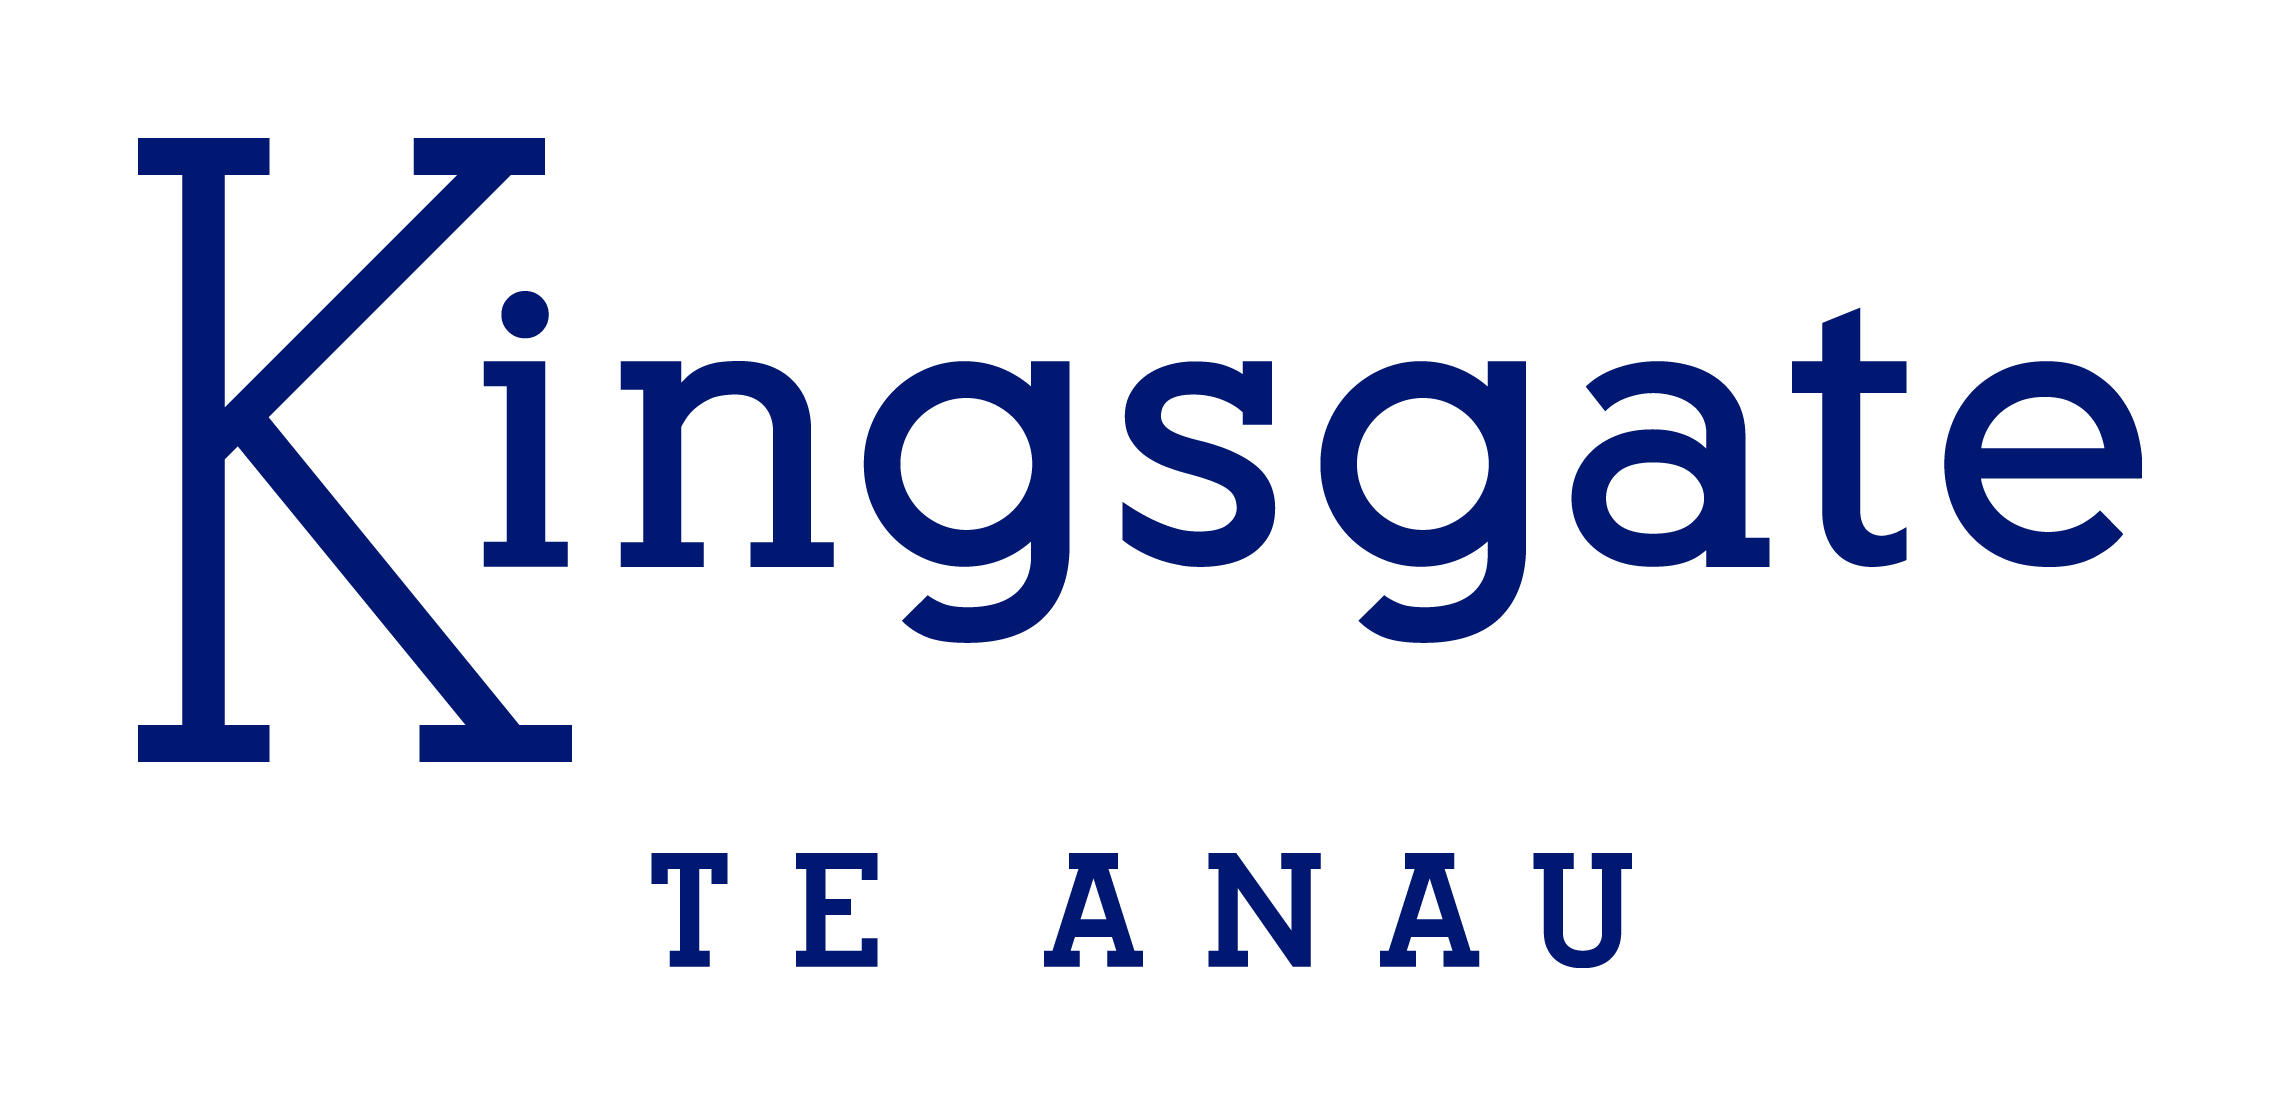 
Kingsgate Hotel Te Anau